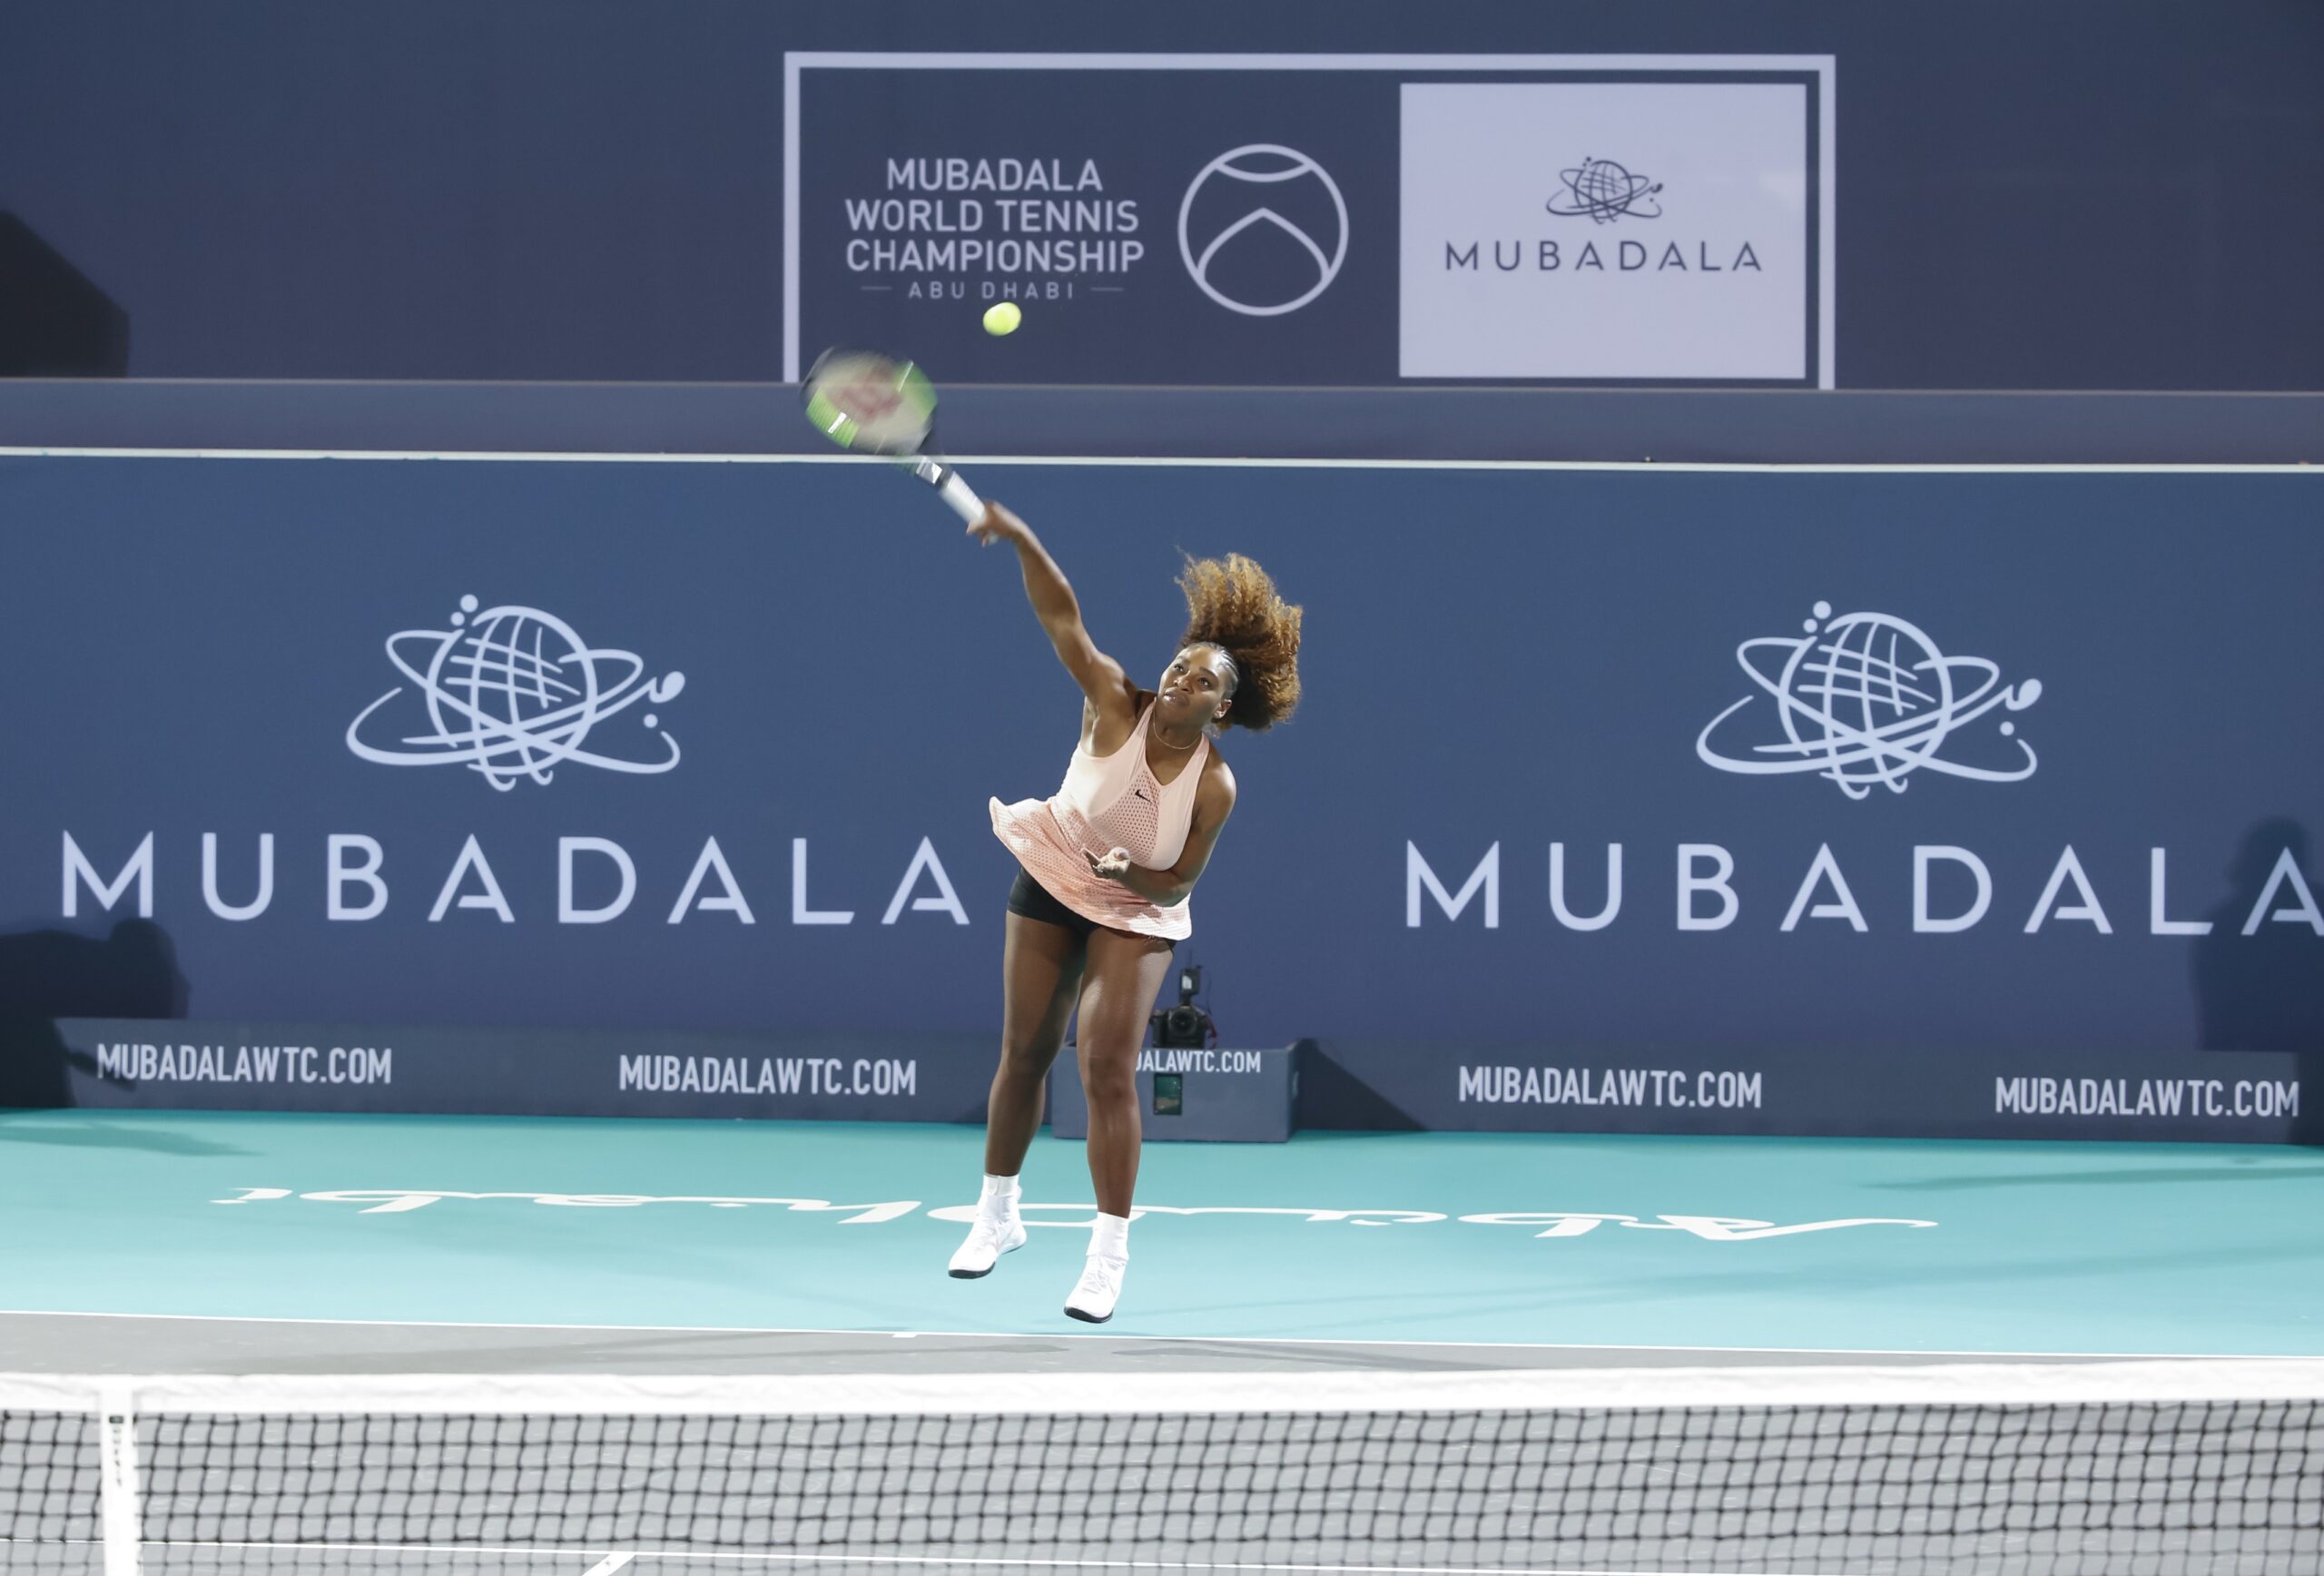 Former world No.1 Serena Williams at Mubadala World Tennis Championship 2018 scaled